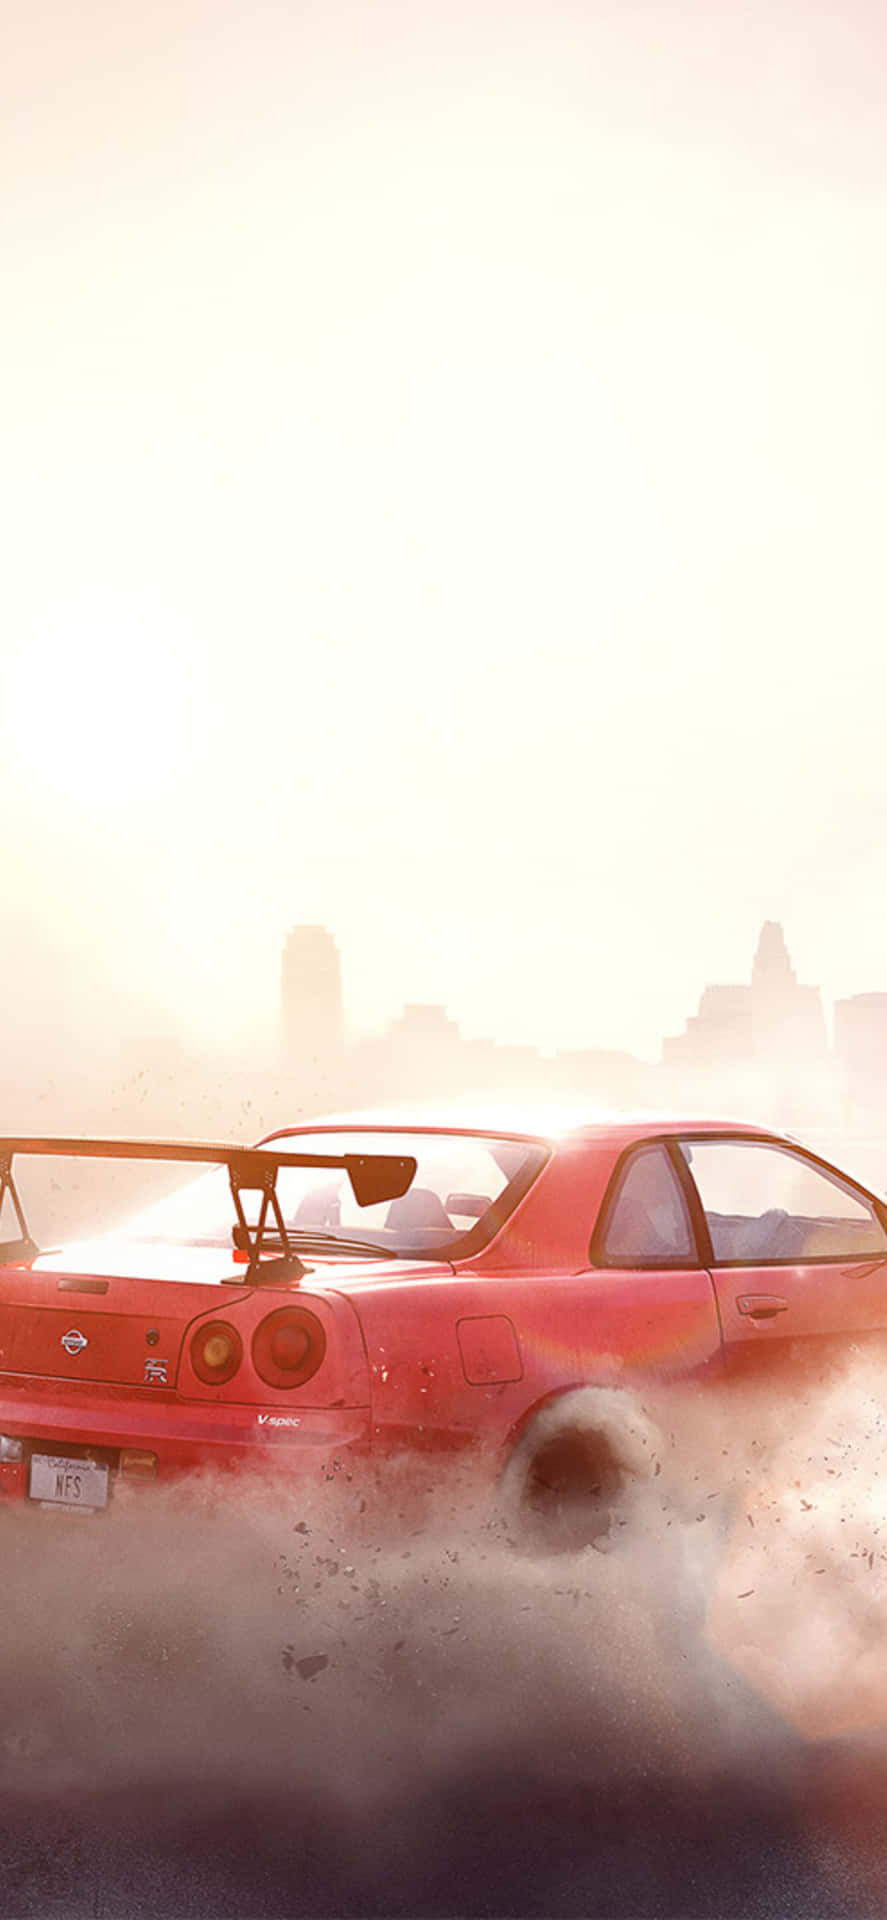 Iphonexs Bakgrundsbild För Need For Speed Payback Med Röd Nissan Skyline R34 Gt-r.